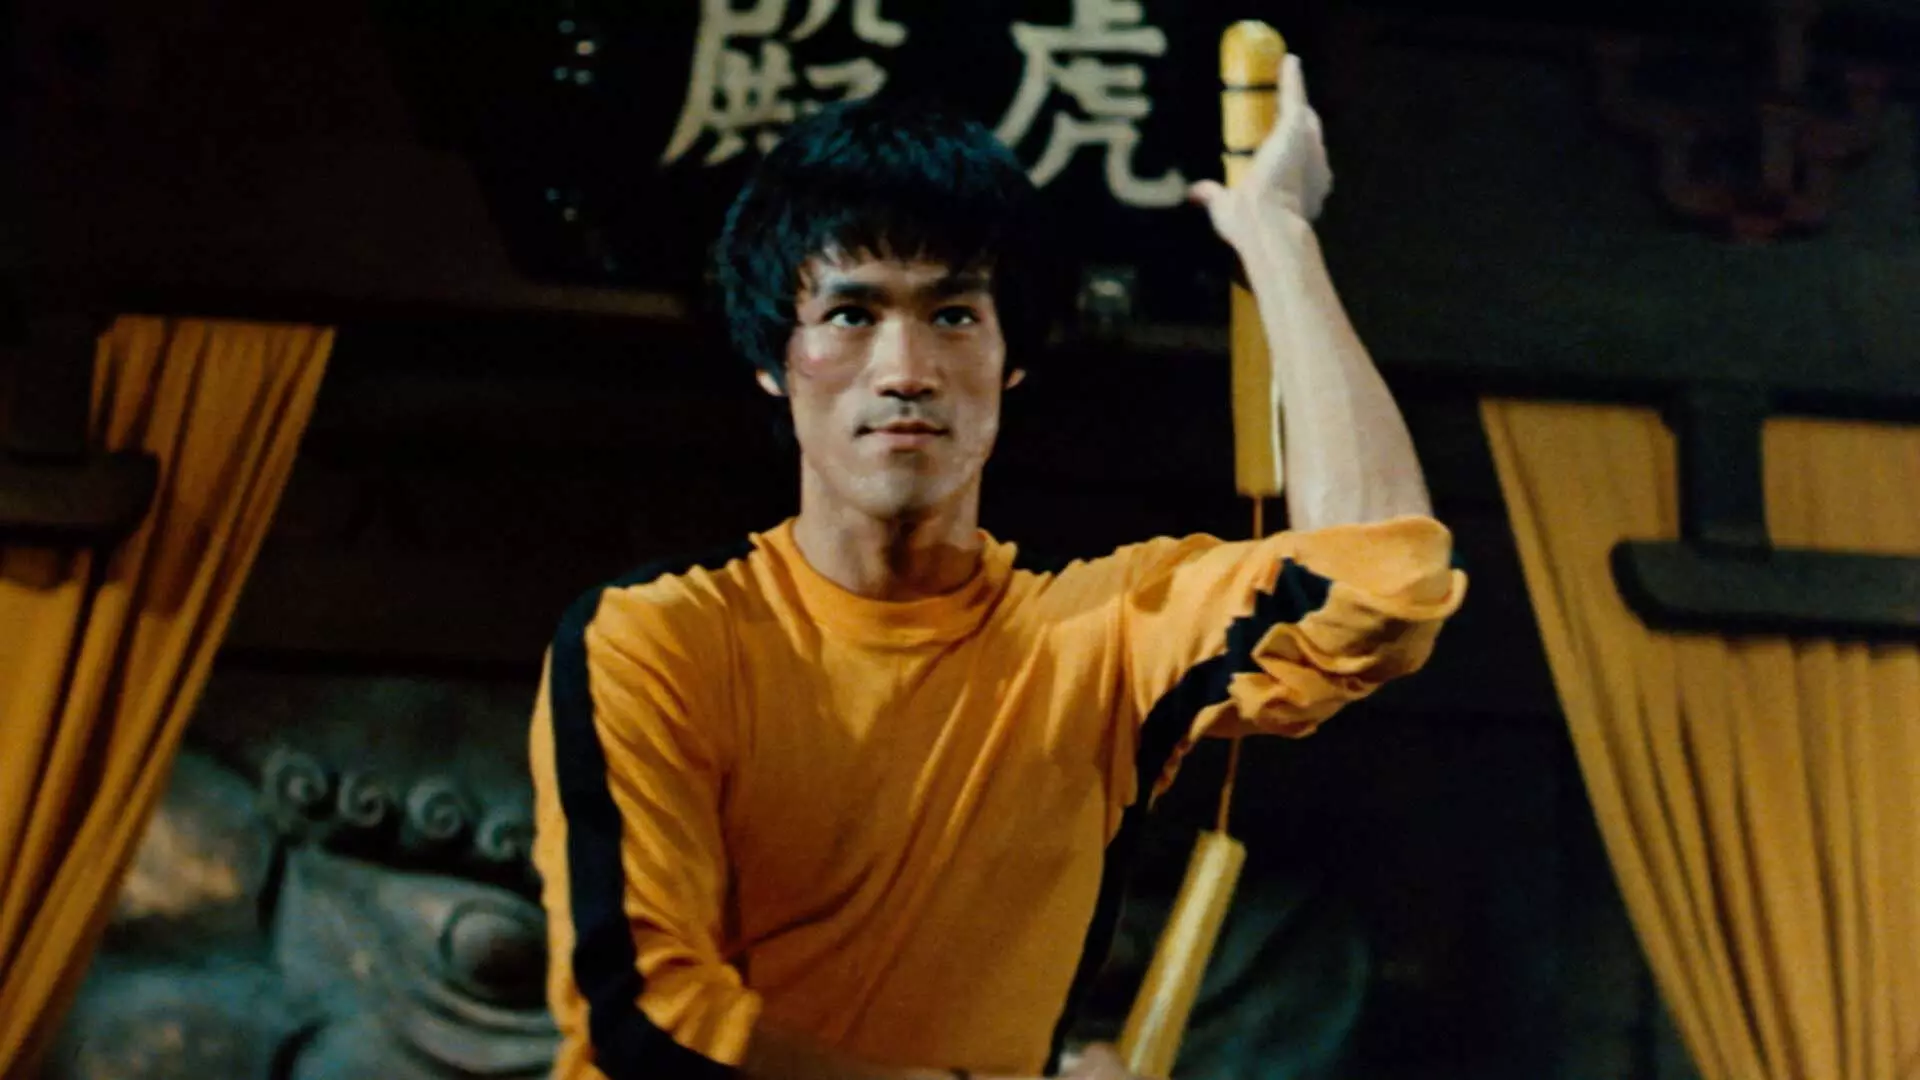 بروس لی با لباس زرد و سیاه معروف مشغول انجام حرکات رزمی در فیلم Game of Death